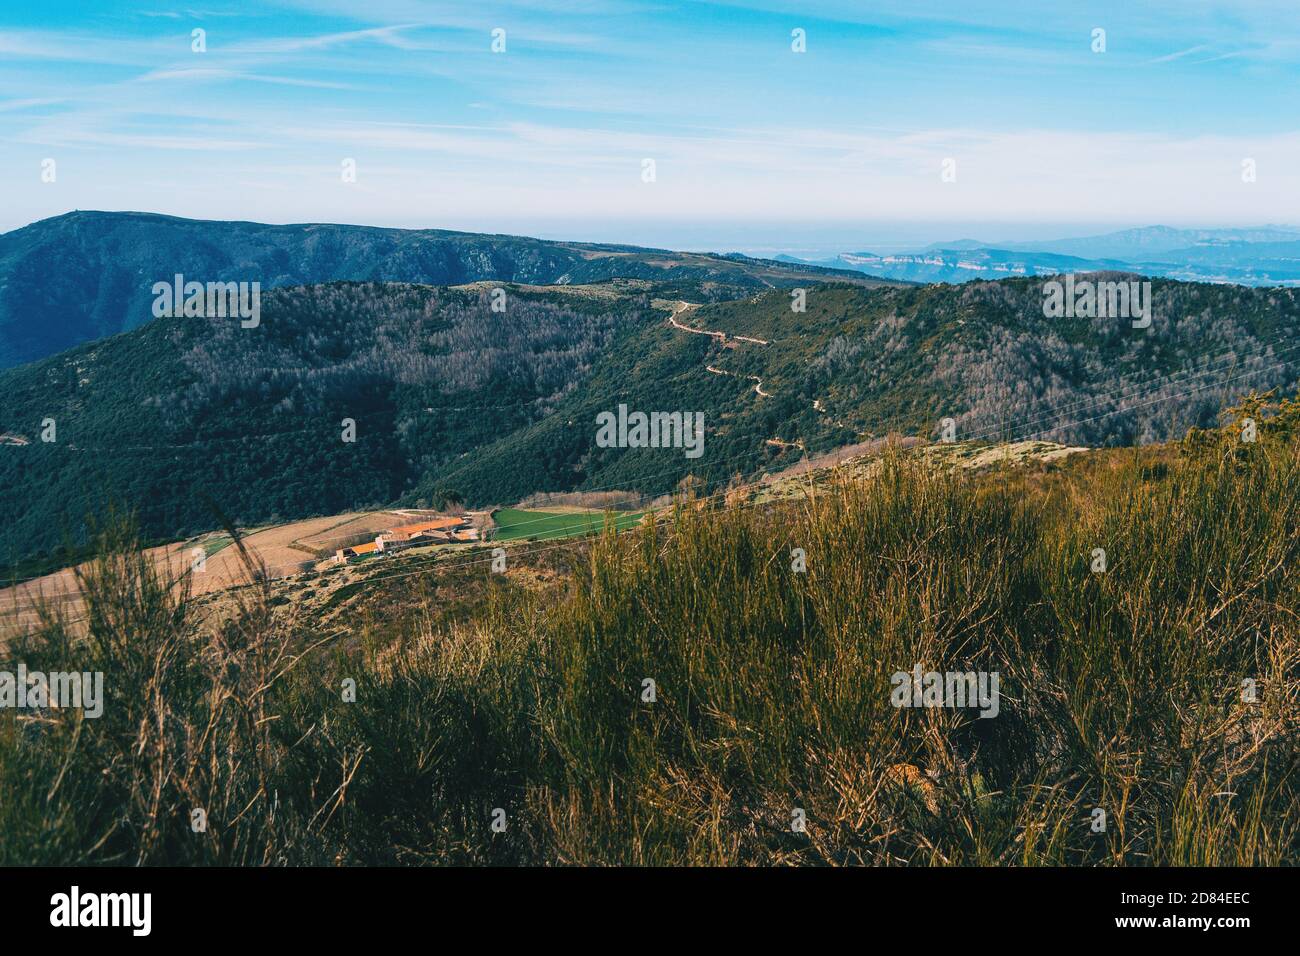 Paisaje con vistas de verdes montañas boscosas con unos pocos casas y un camino Foto de stock